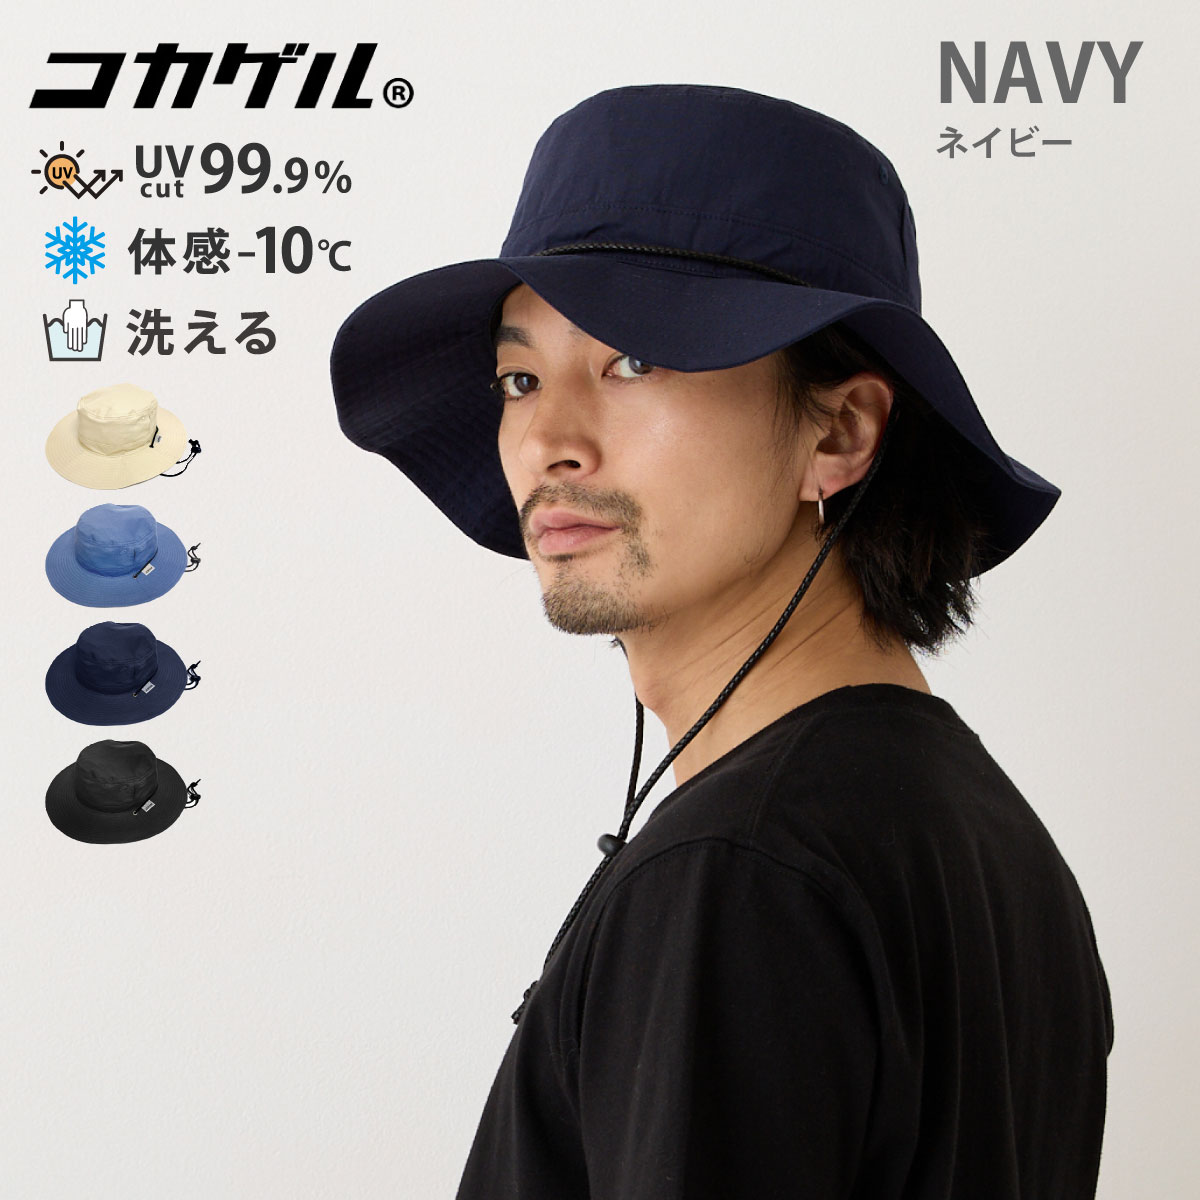 コカゲル 大きい帽子 BIG バケットハット UV99.9%カット 58-60cm ヒモつき 高機能...